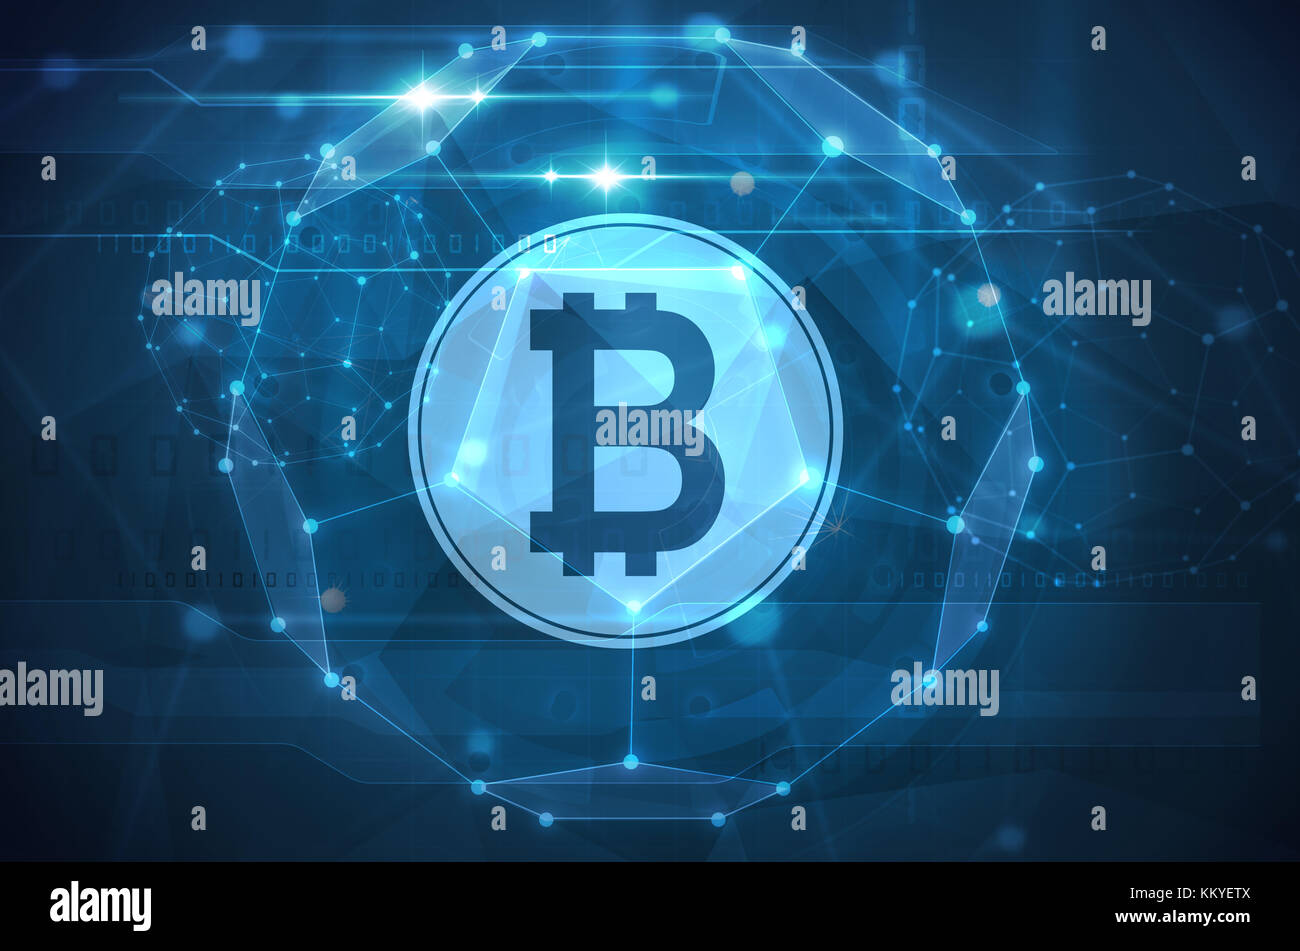 Illustration symbole bitcoin avec fond bleu foncé Banque D'Images